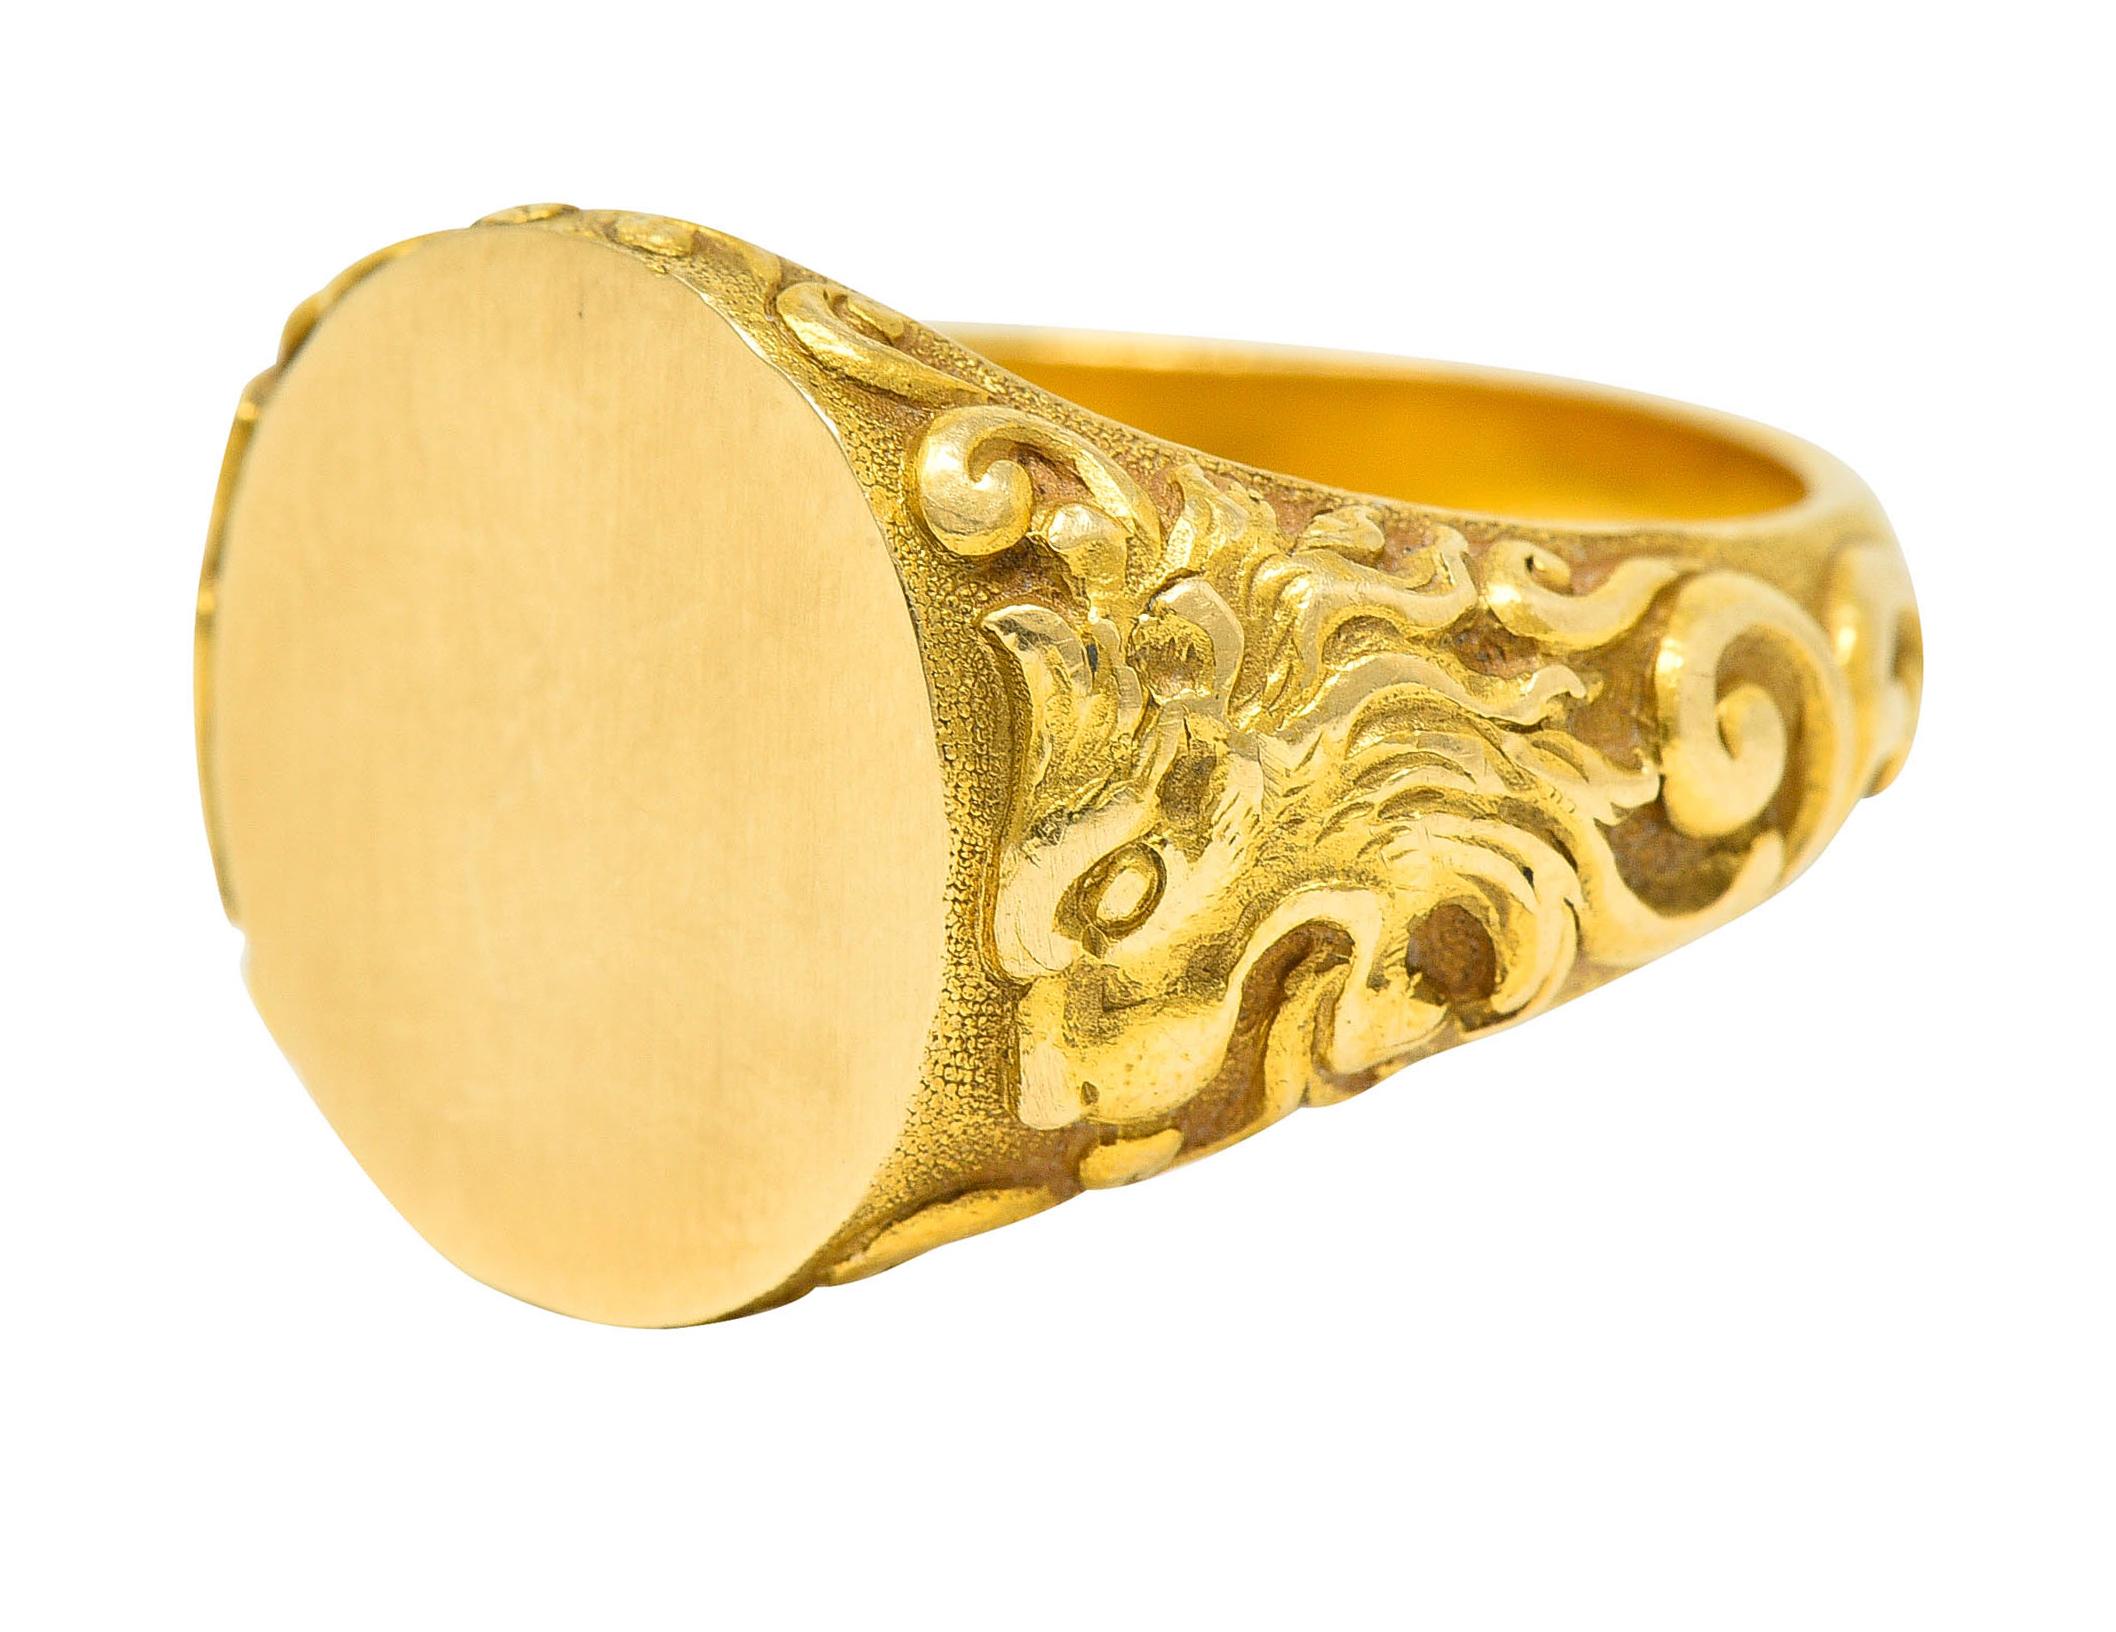 Tiffany & Co. Art Nouveau 18 Karat Gold Unisex Lion Signet Ring 3